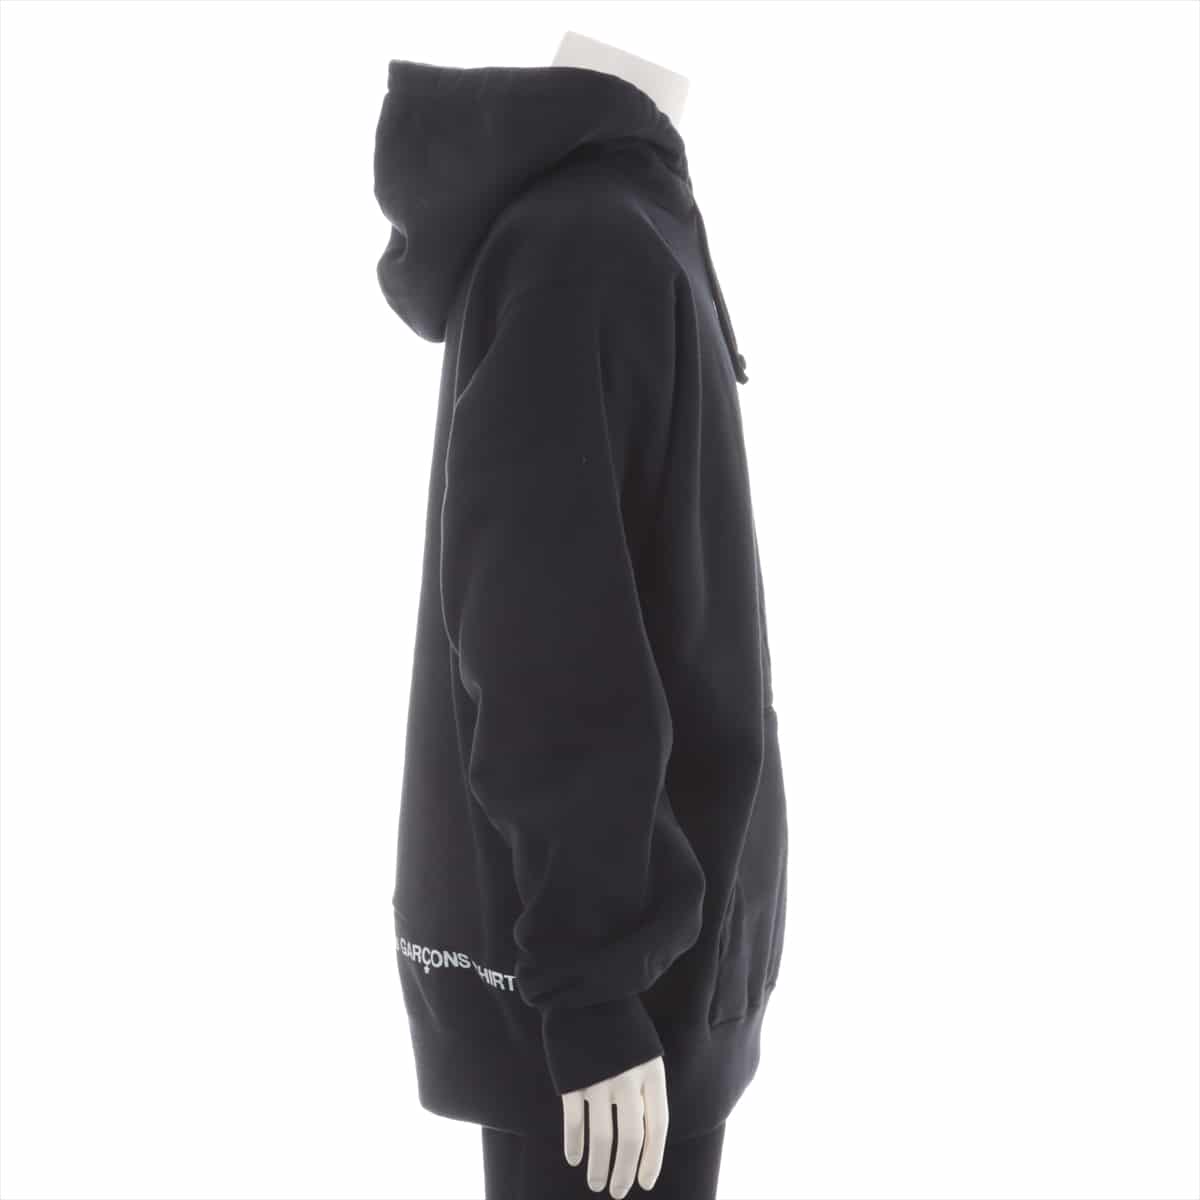 シュプリーム×コムデギャルソン 18AW コットン パーカー XL メンズ ブラック  Split Box Logo Hooded Sweatshirt